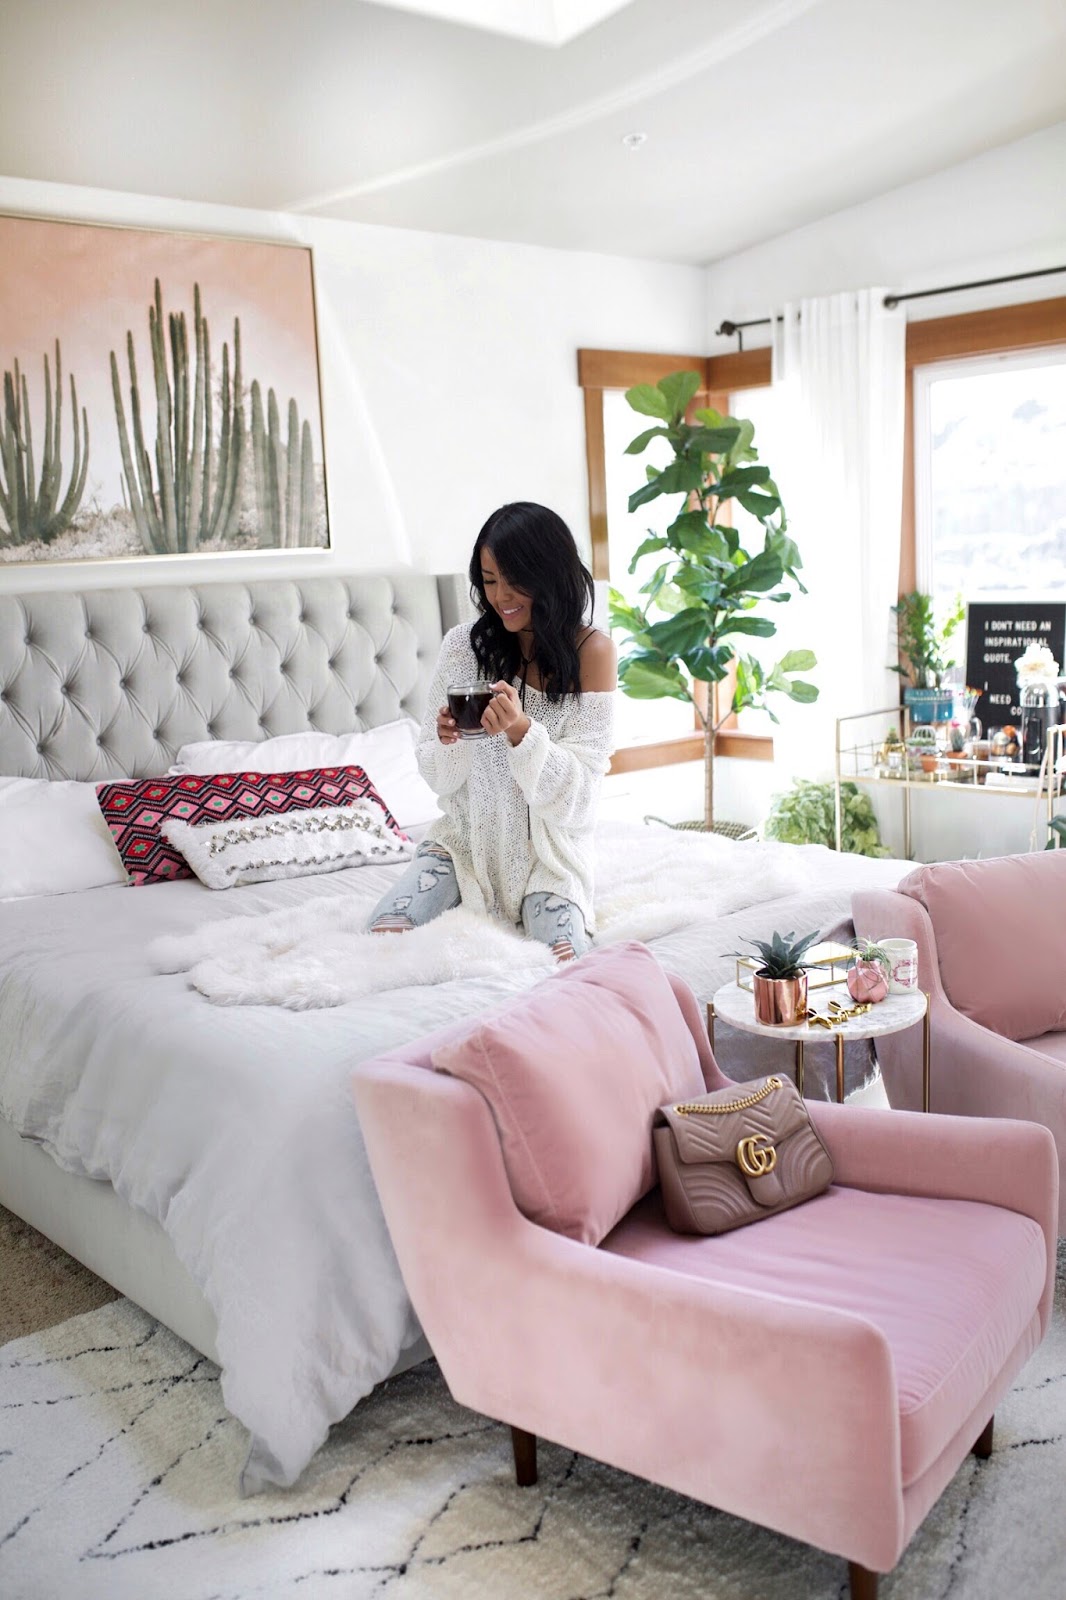 Gypsy Tan Blogger Bedroom Inspiration